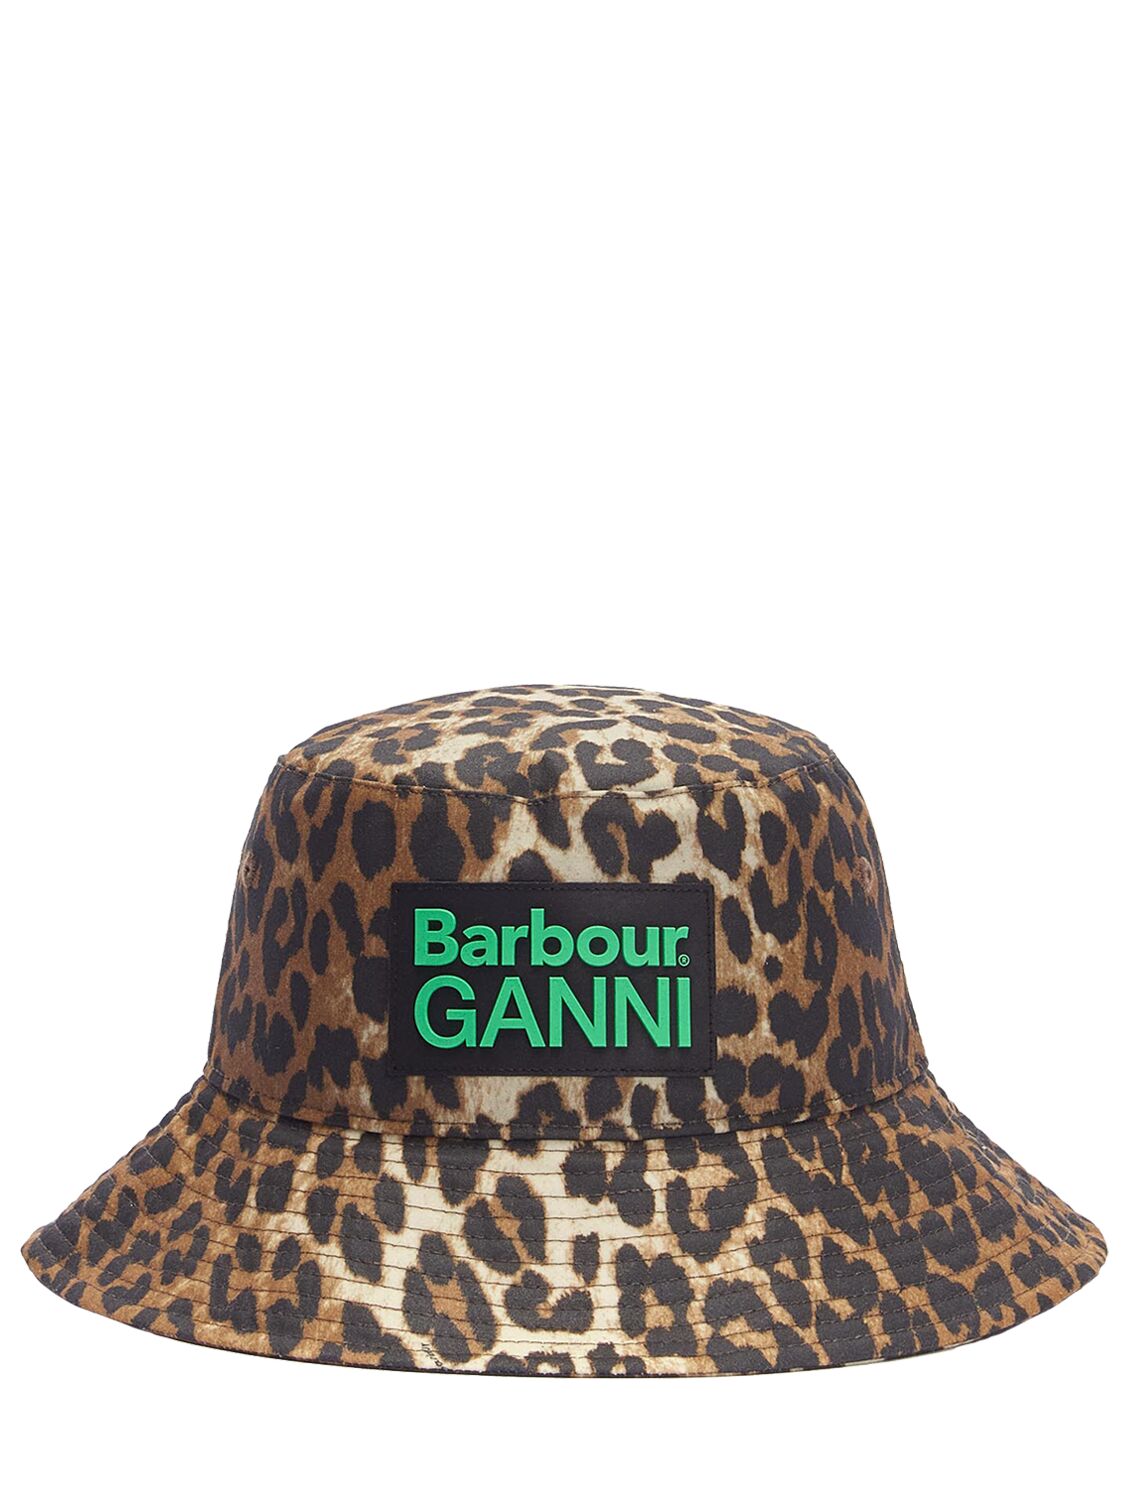 Image of Barbour X Ganni Leo Print Cotton Hat